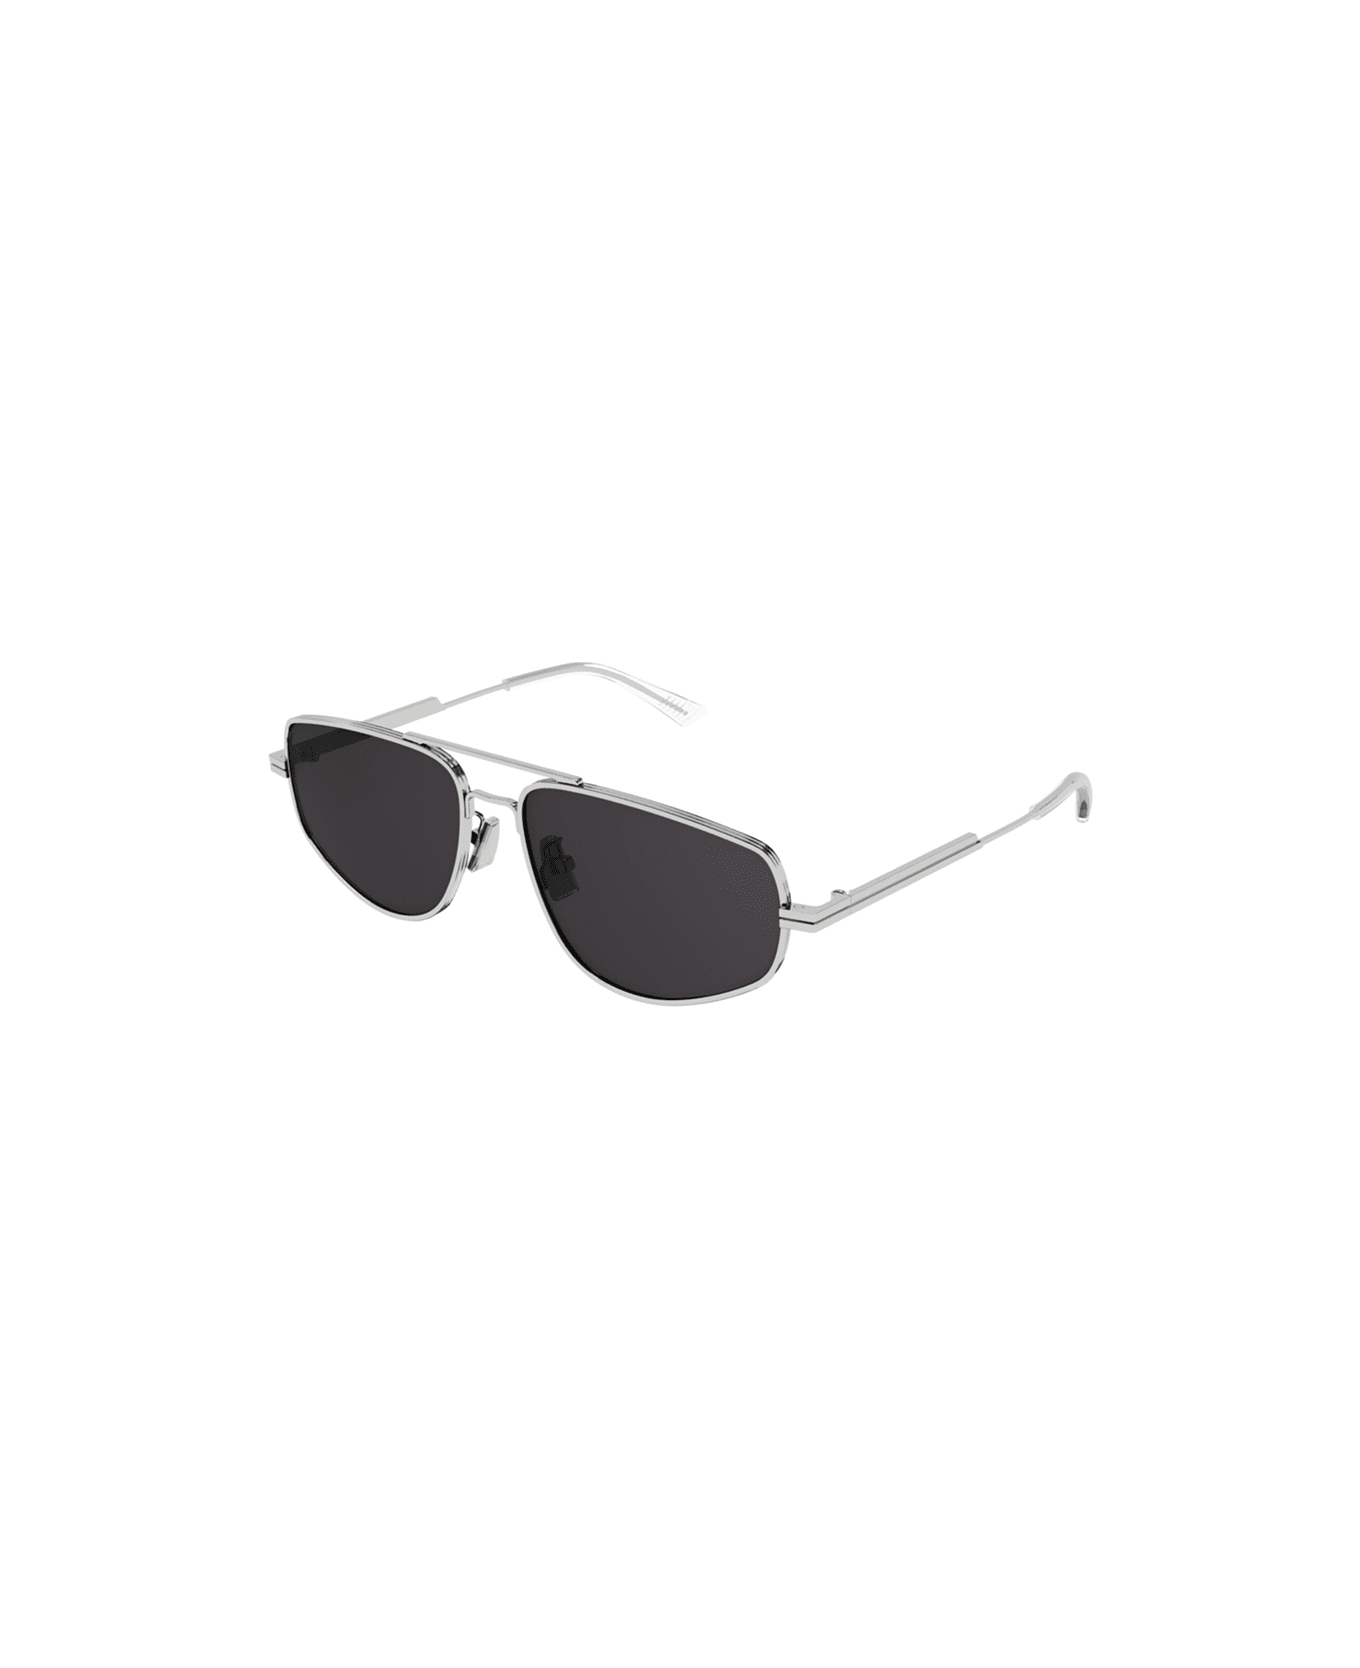 Bottega Veneta Eyewear BV1125 003 Sunglasses - Acciaio